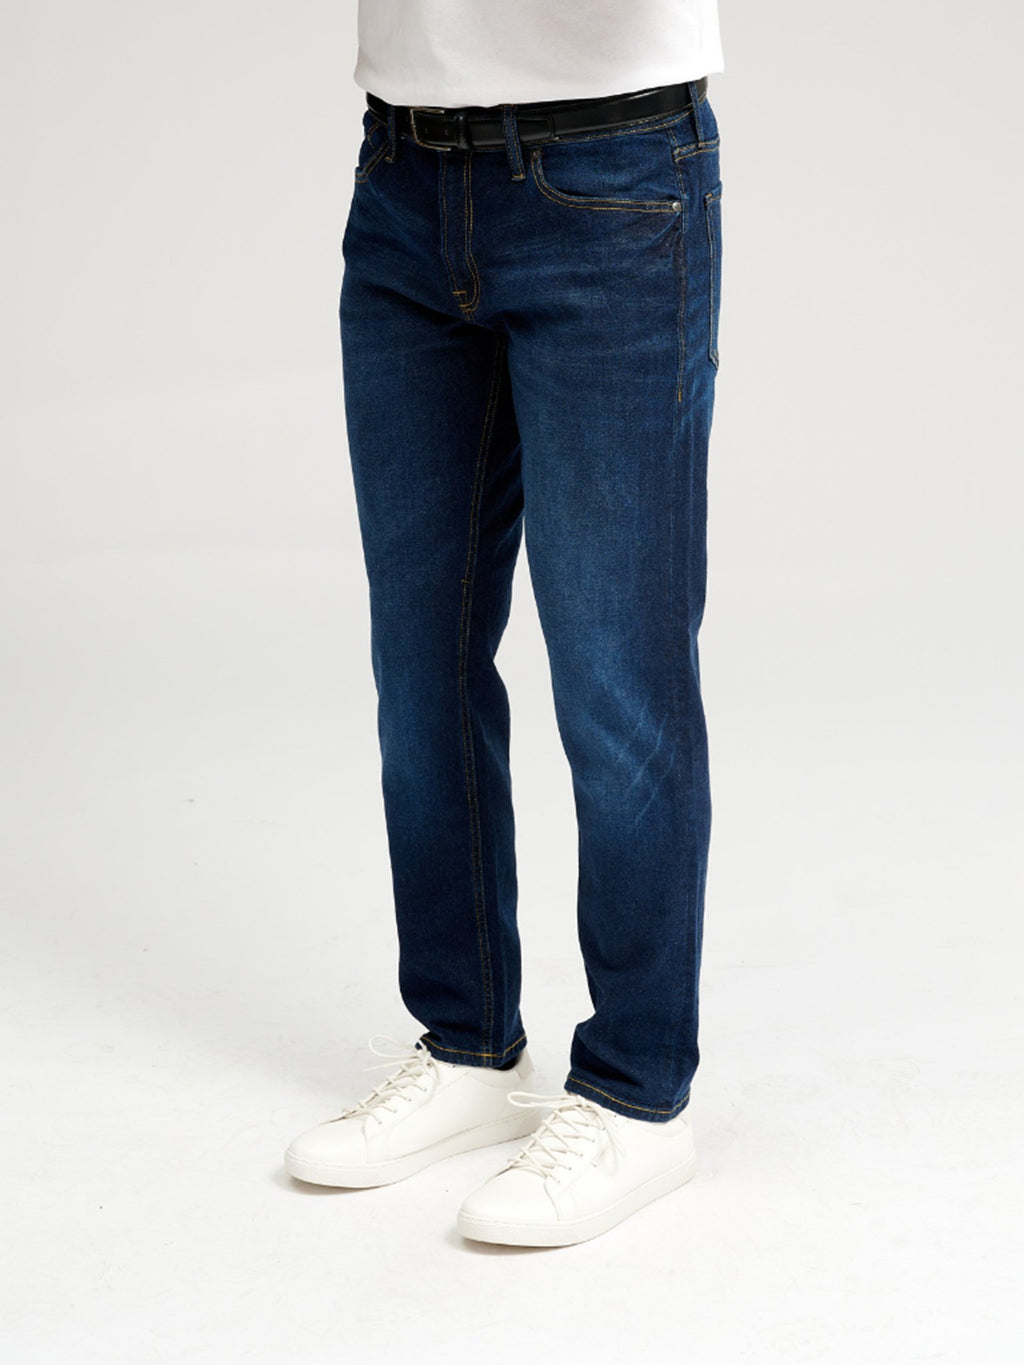 原始性能牛仔裤（常规） - 深蓝色牛仔布